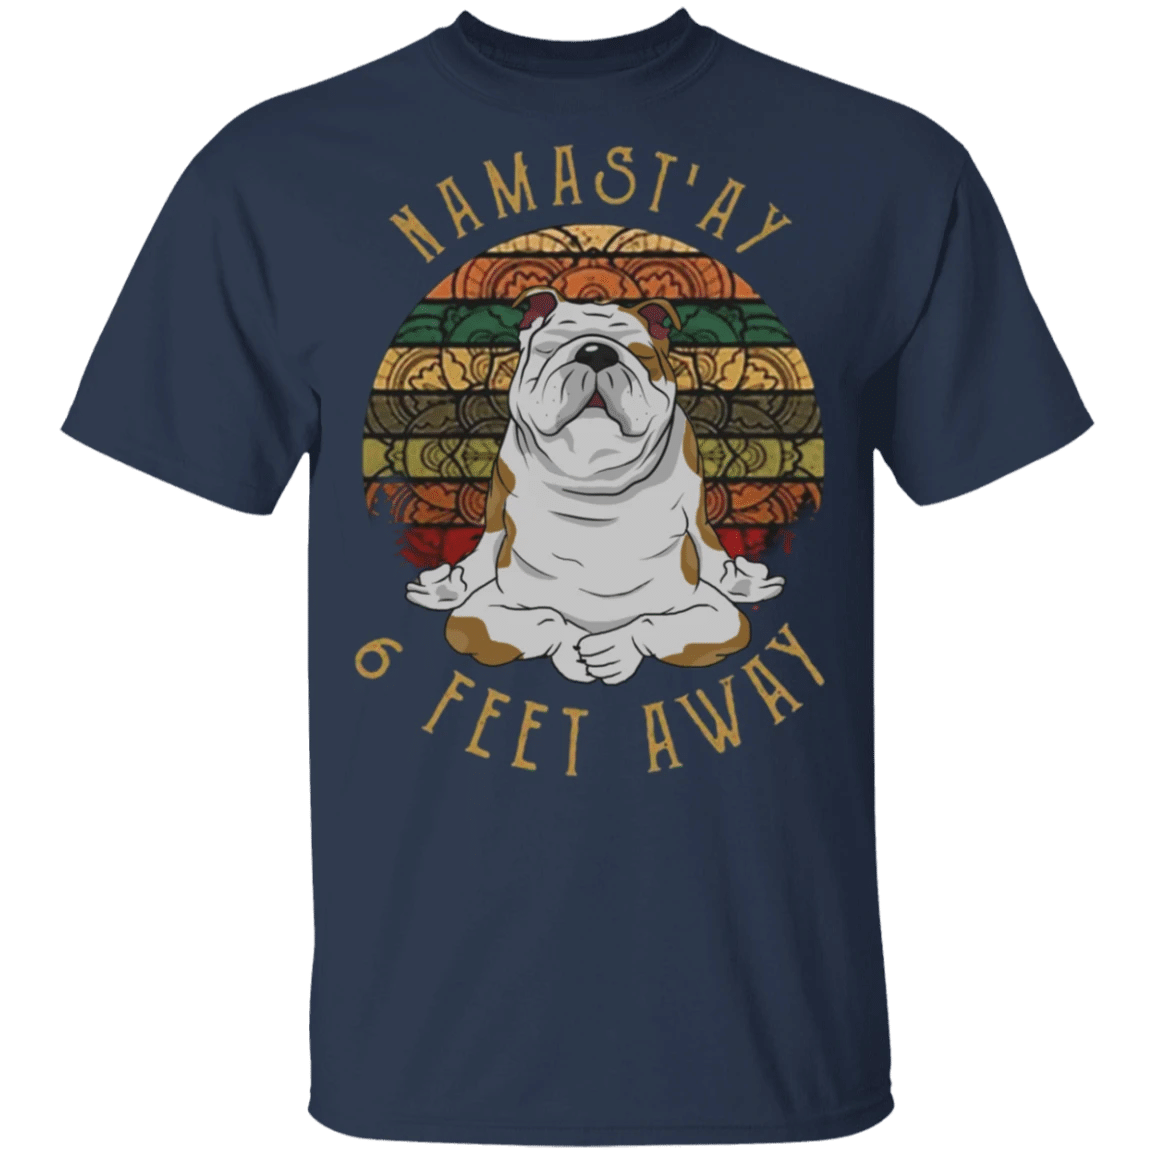 Bulldog Namast'ay 6 Feet Away Vintage Shirt Social Distancing Hippies Yoga